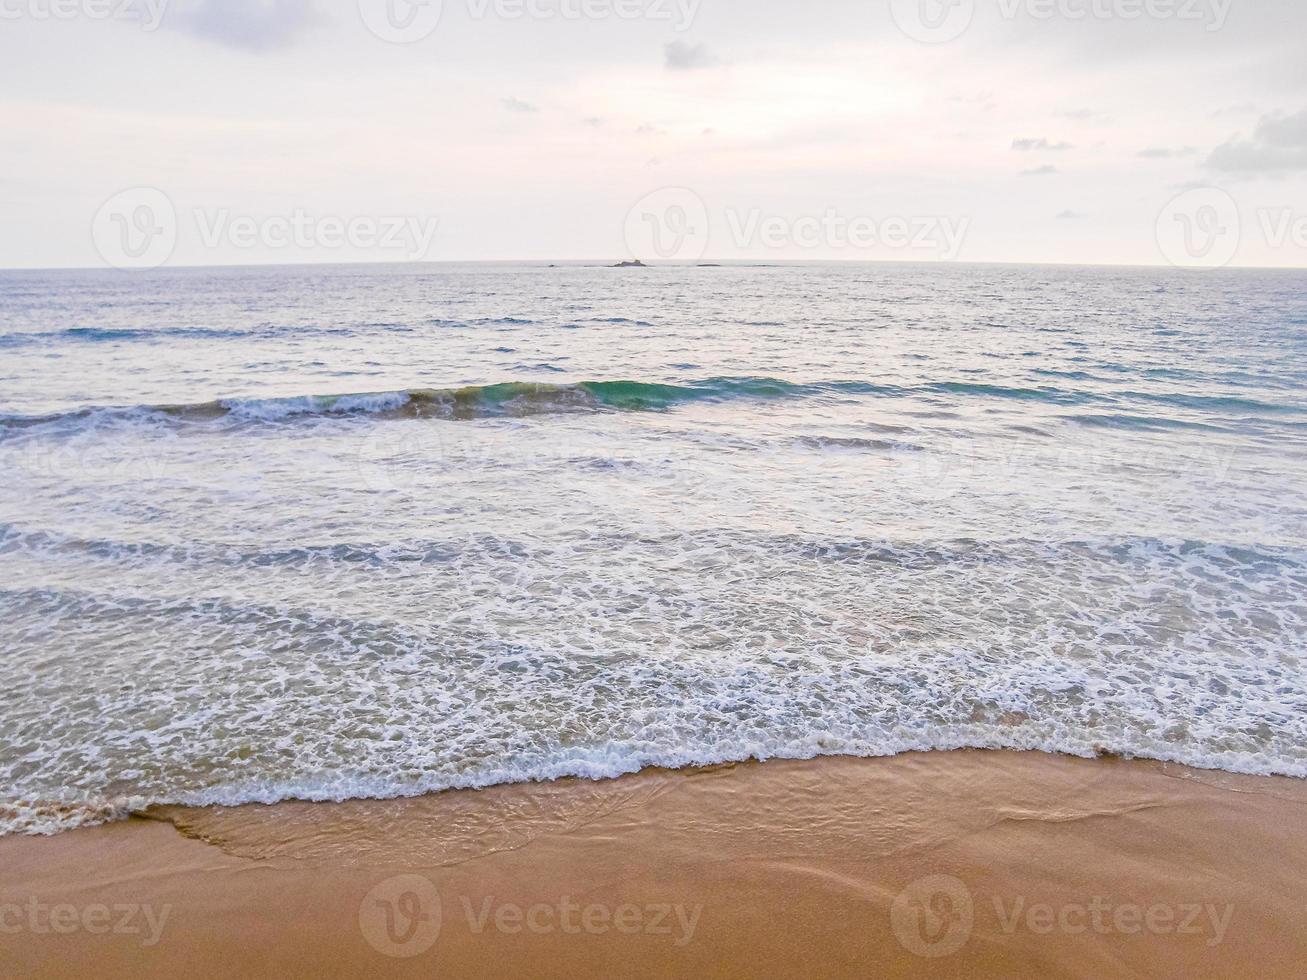 mooi zonnig landschapspanorama van het strand van Bentota op Sri Lanka. foto